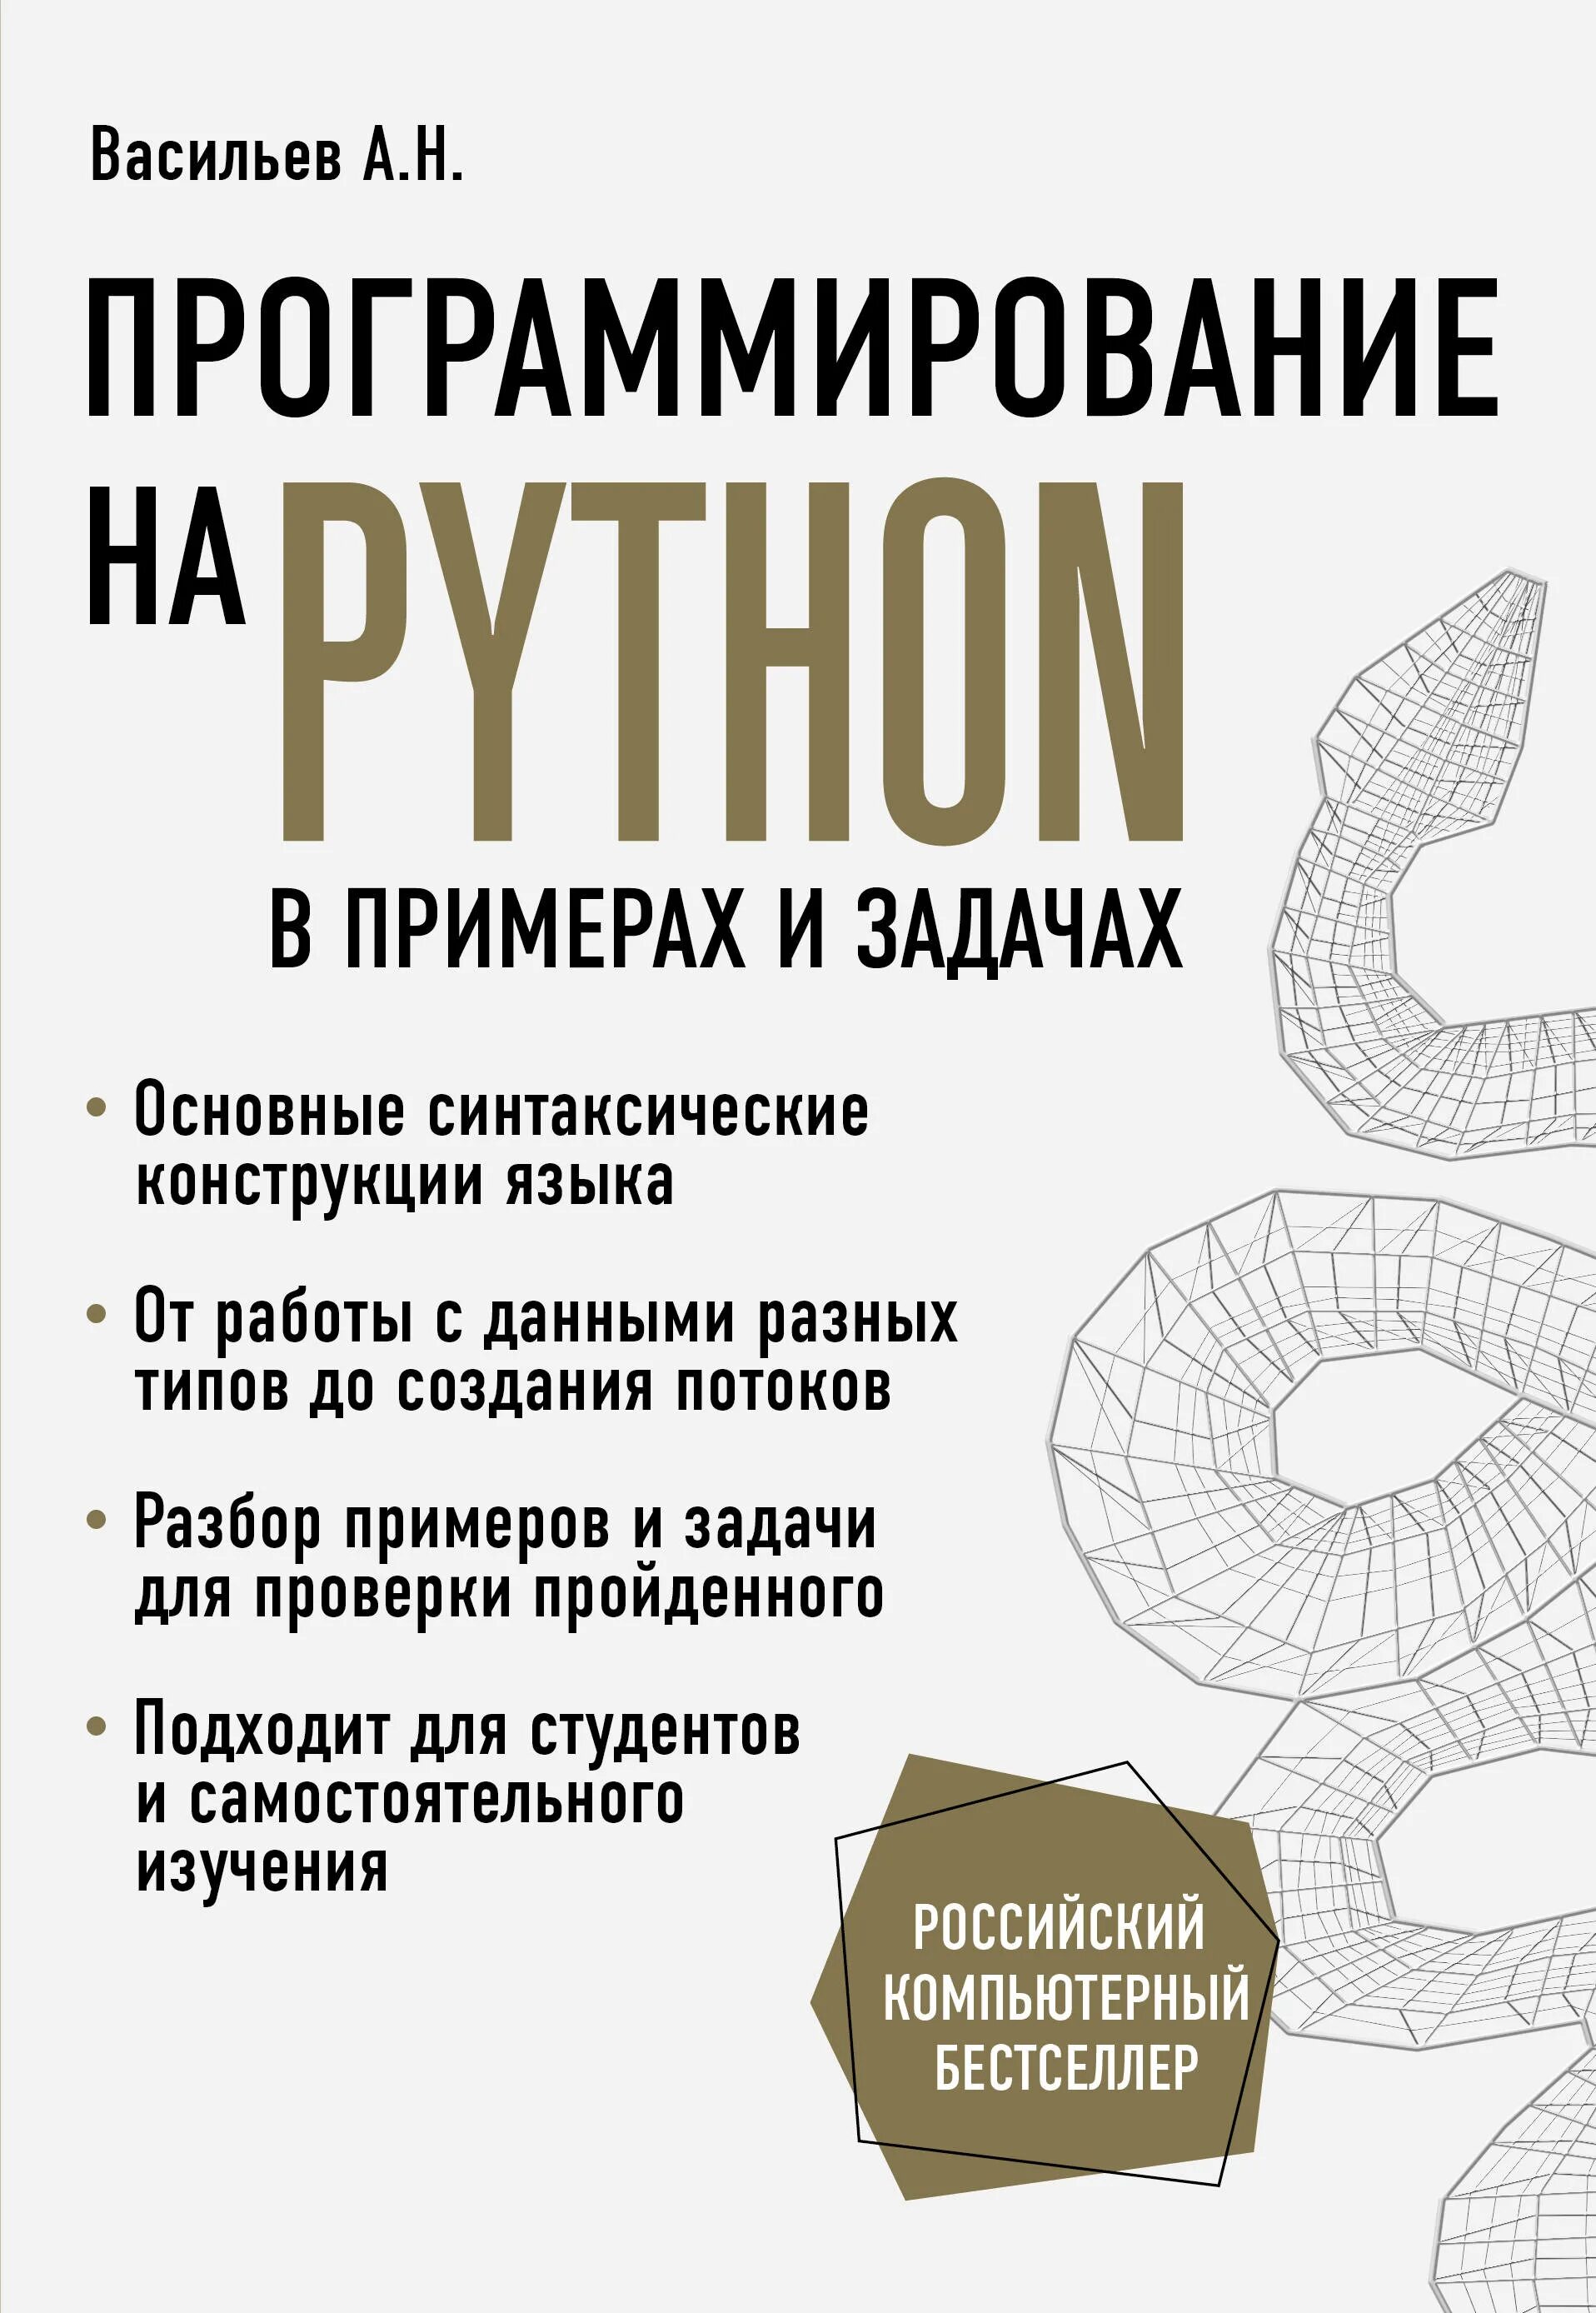 Задачи python книга. Васильев а н программирование. Программирование на Python книга. Васильев а н программирование на Python.